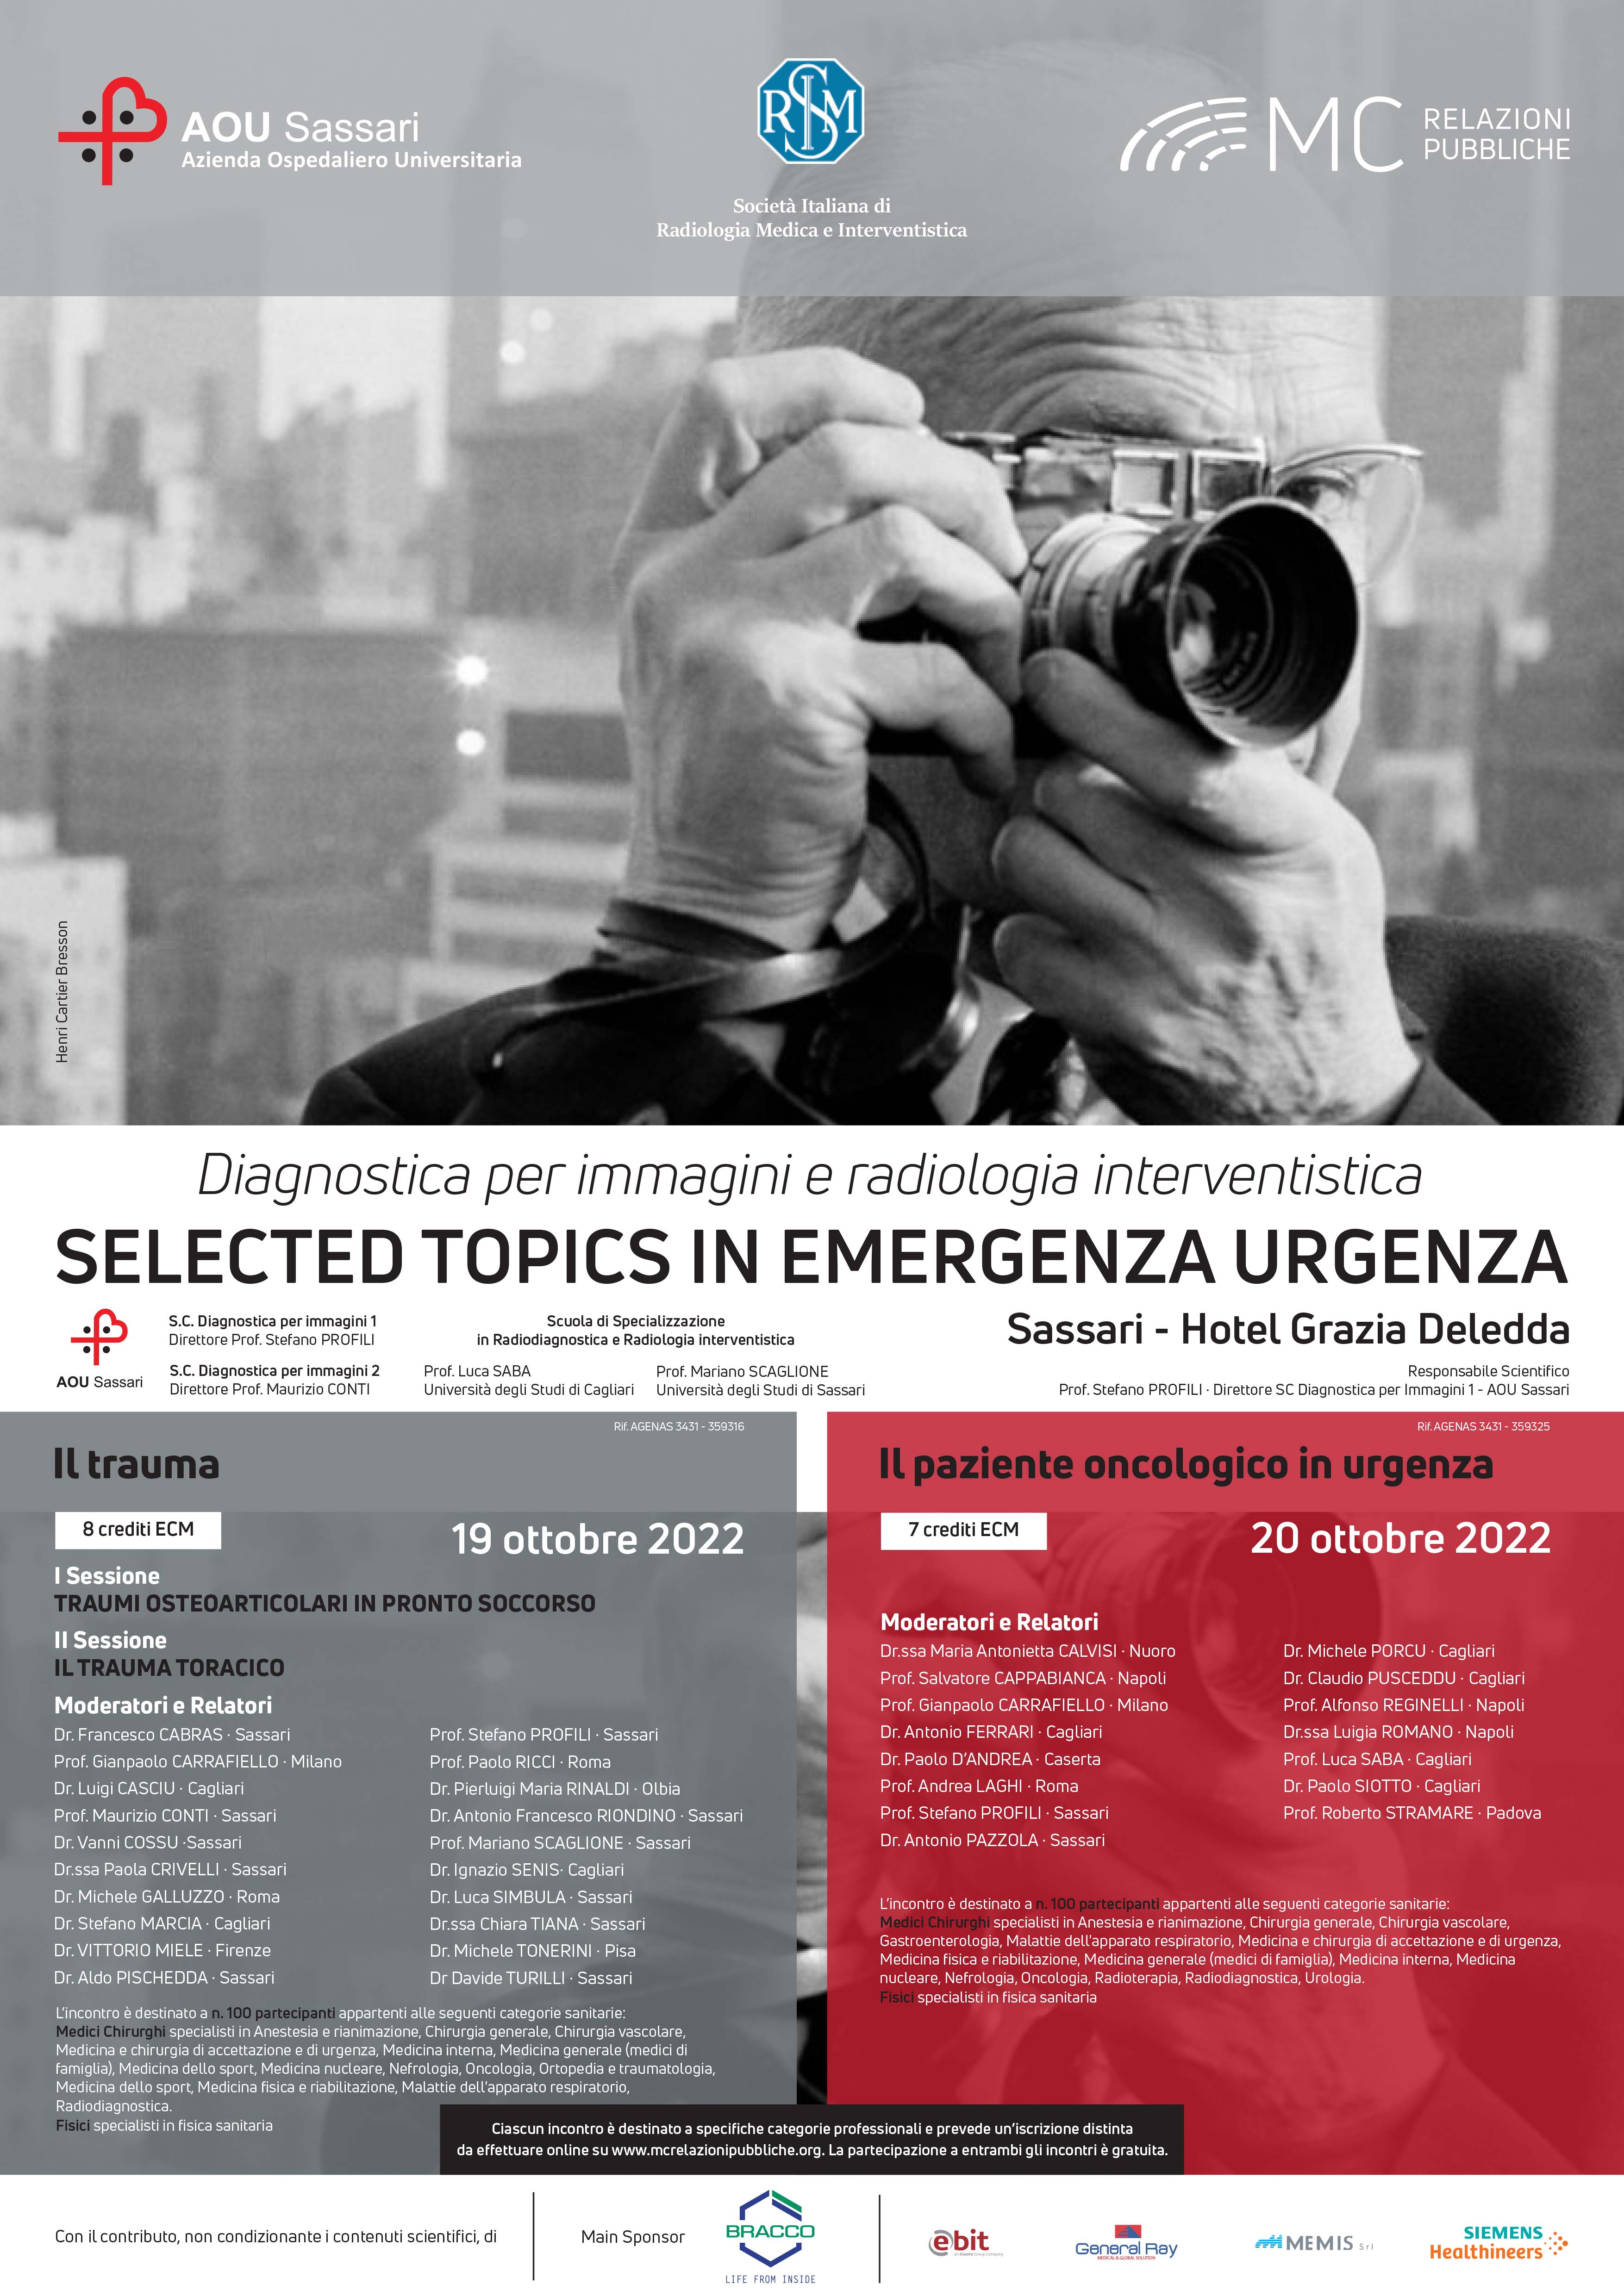 IL PAZIENTE ONCOLOGICO IN URGENZA. Selected topics in emergenza urgenza -  20 ottobre 2022